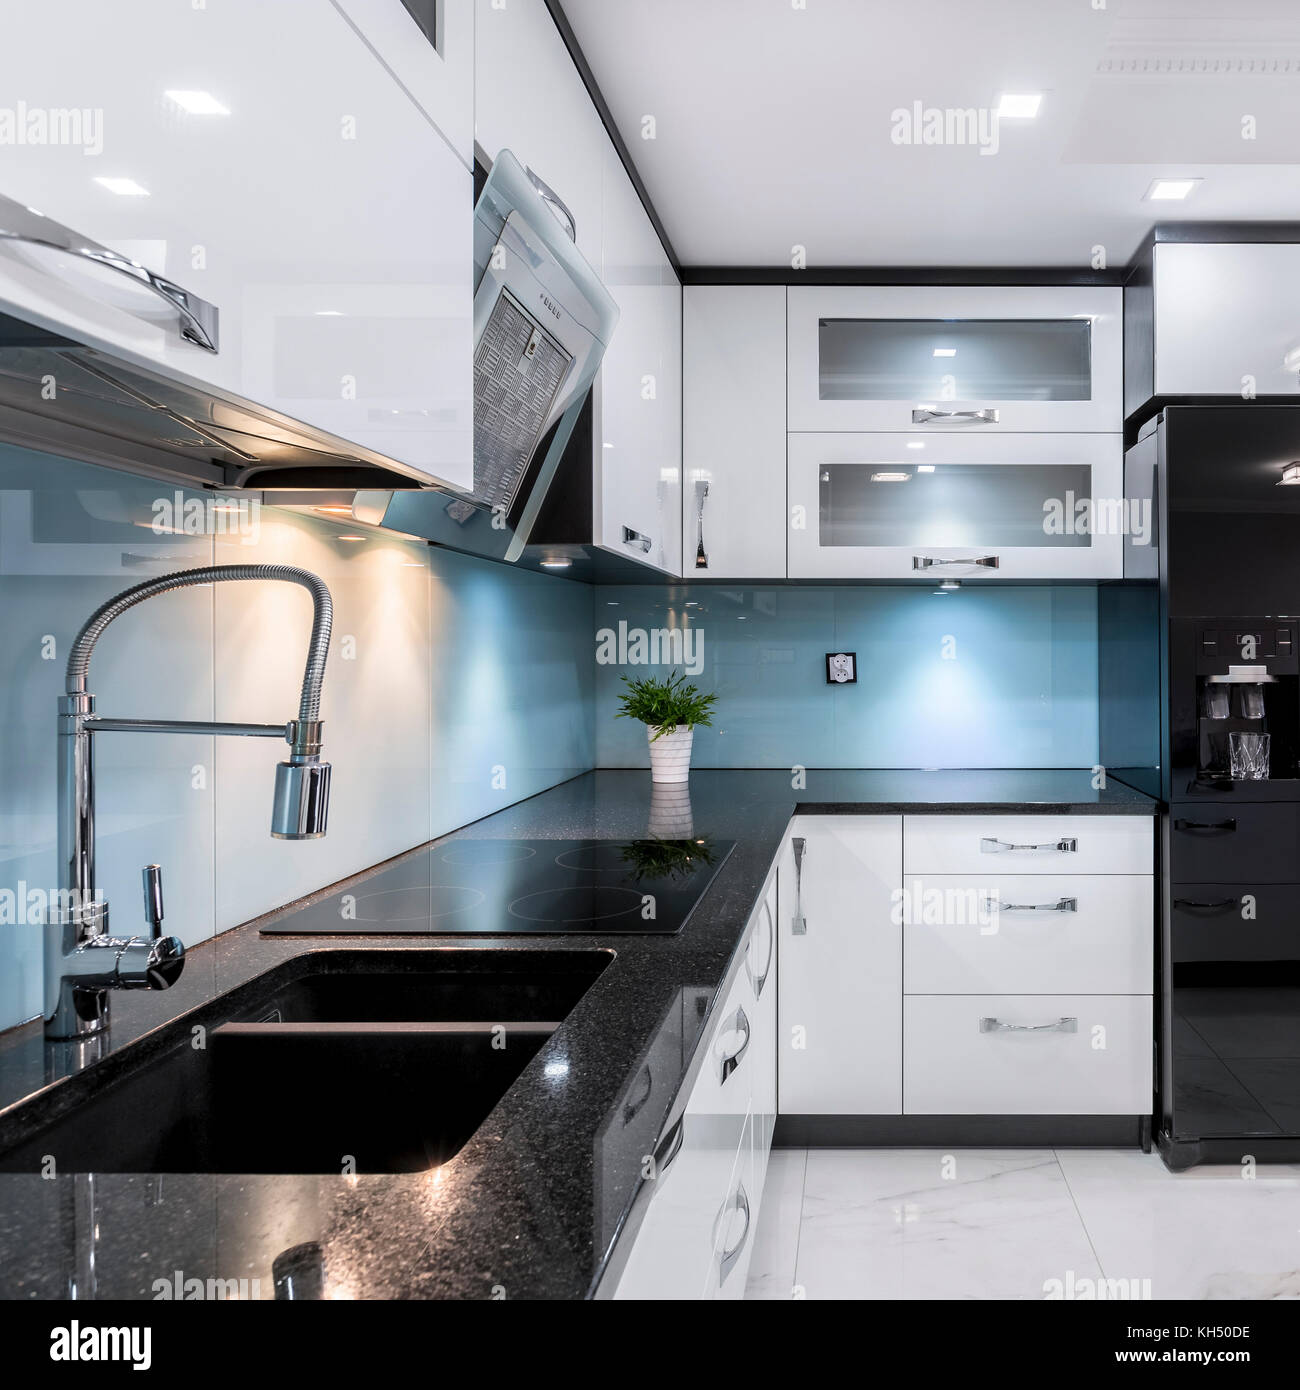 Cocina Moderna Y Elegante Con Mobiliario Blanco Y Negro Fotografia De Stock Alamy